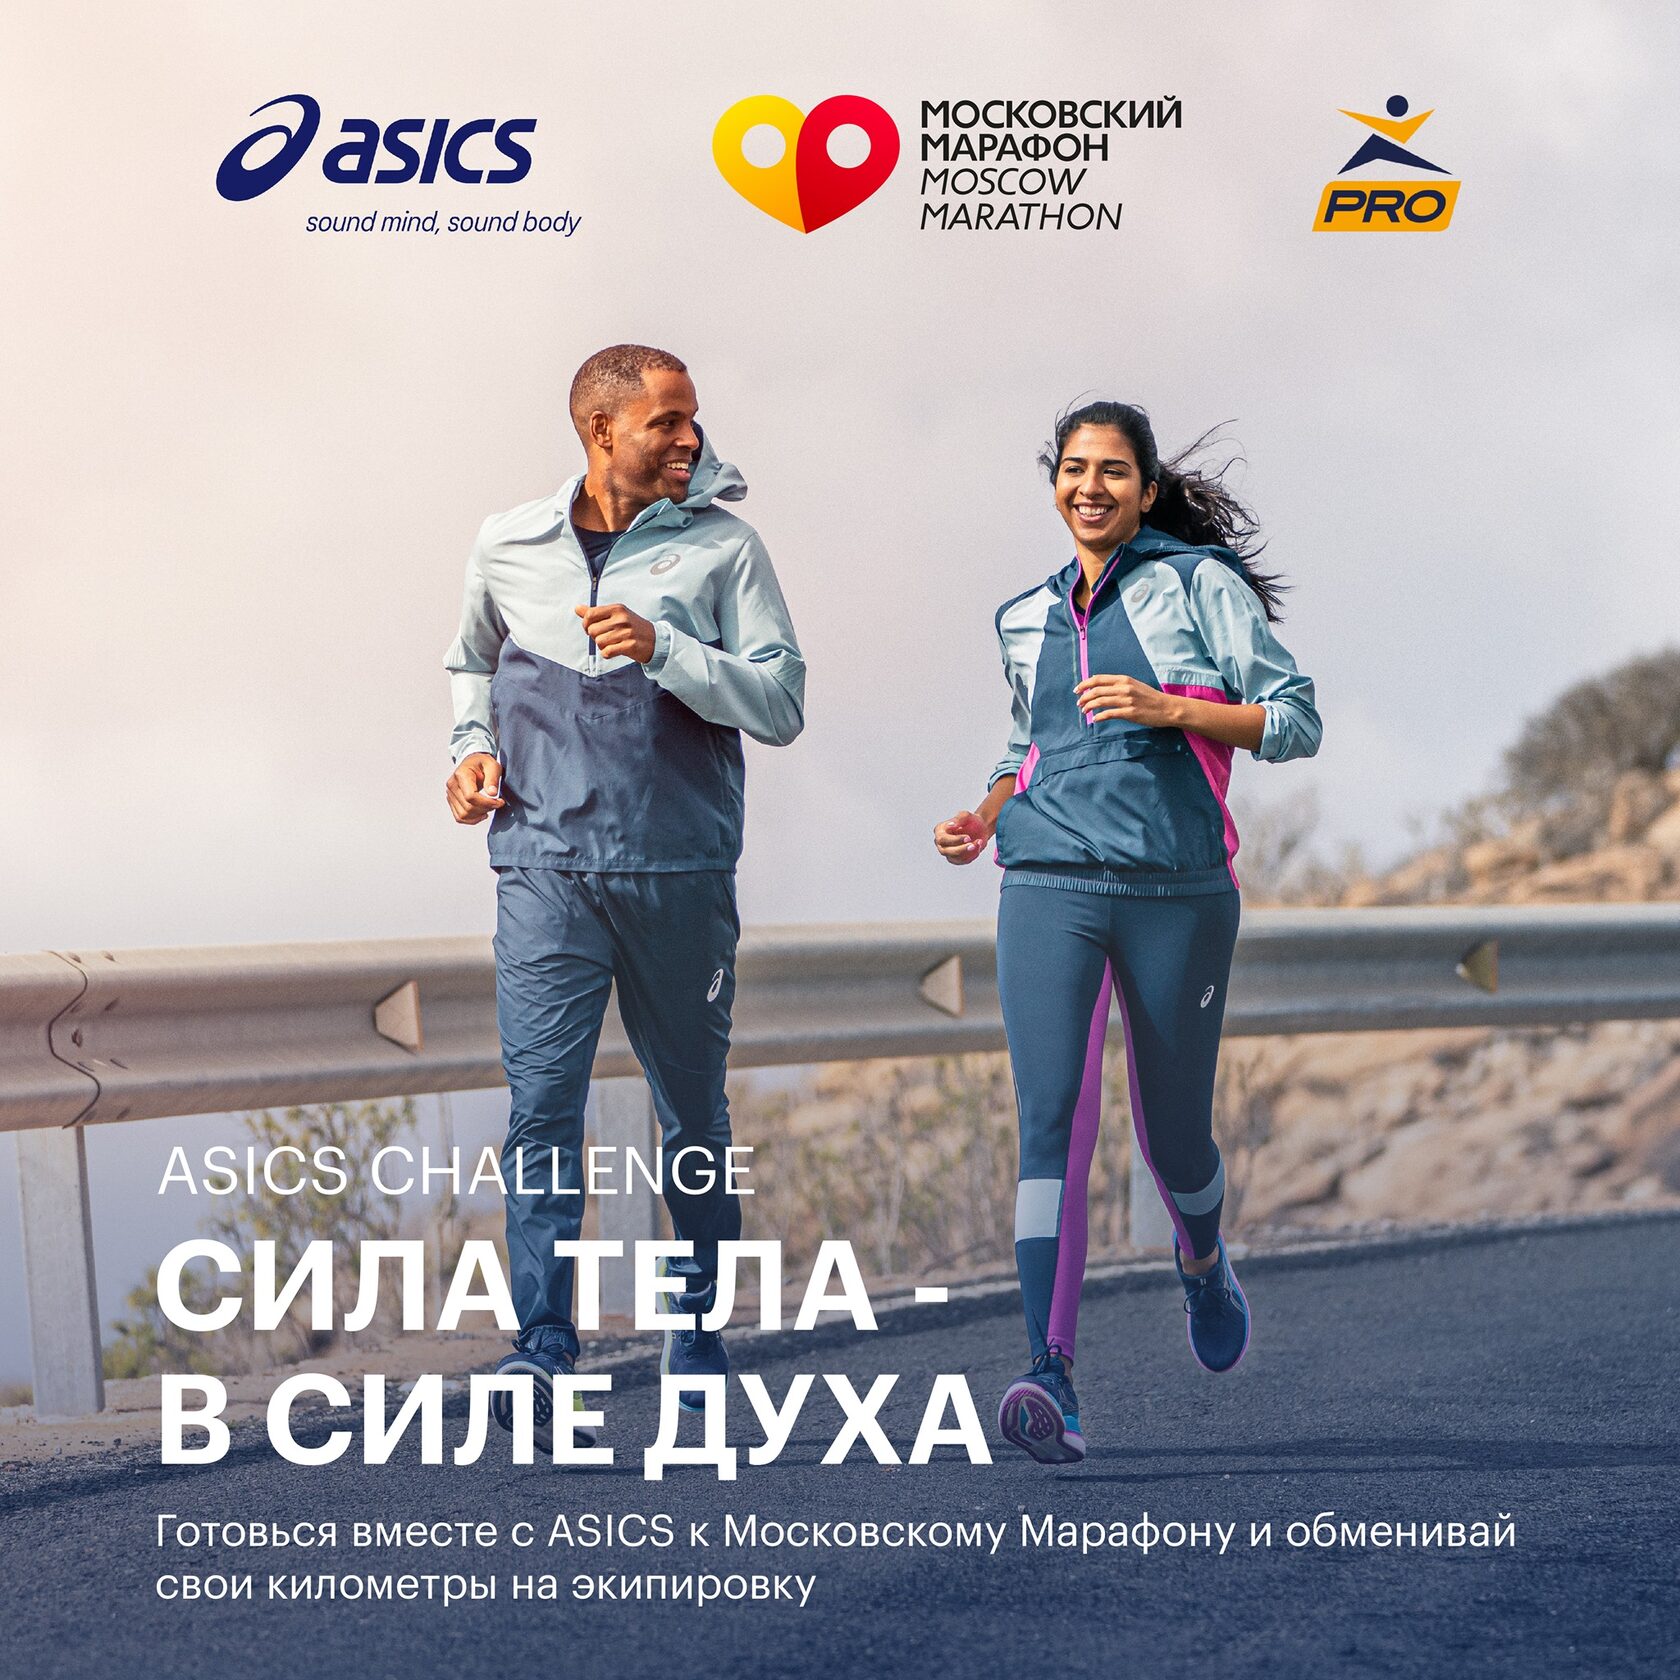 московский марафон ASICS